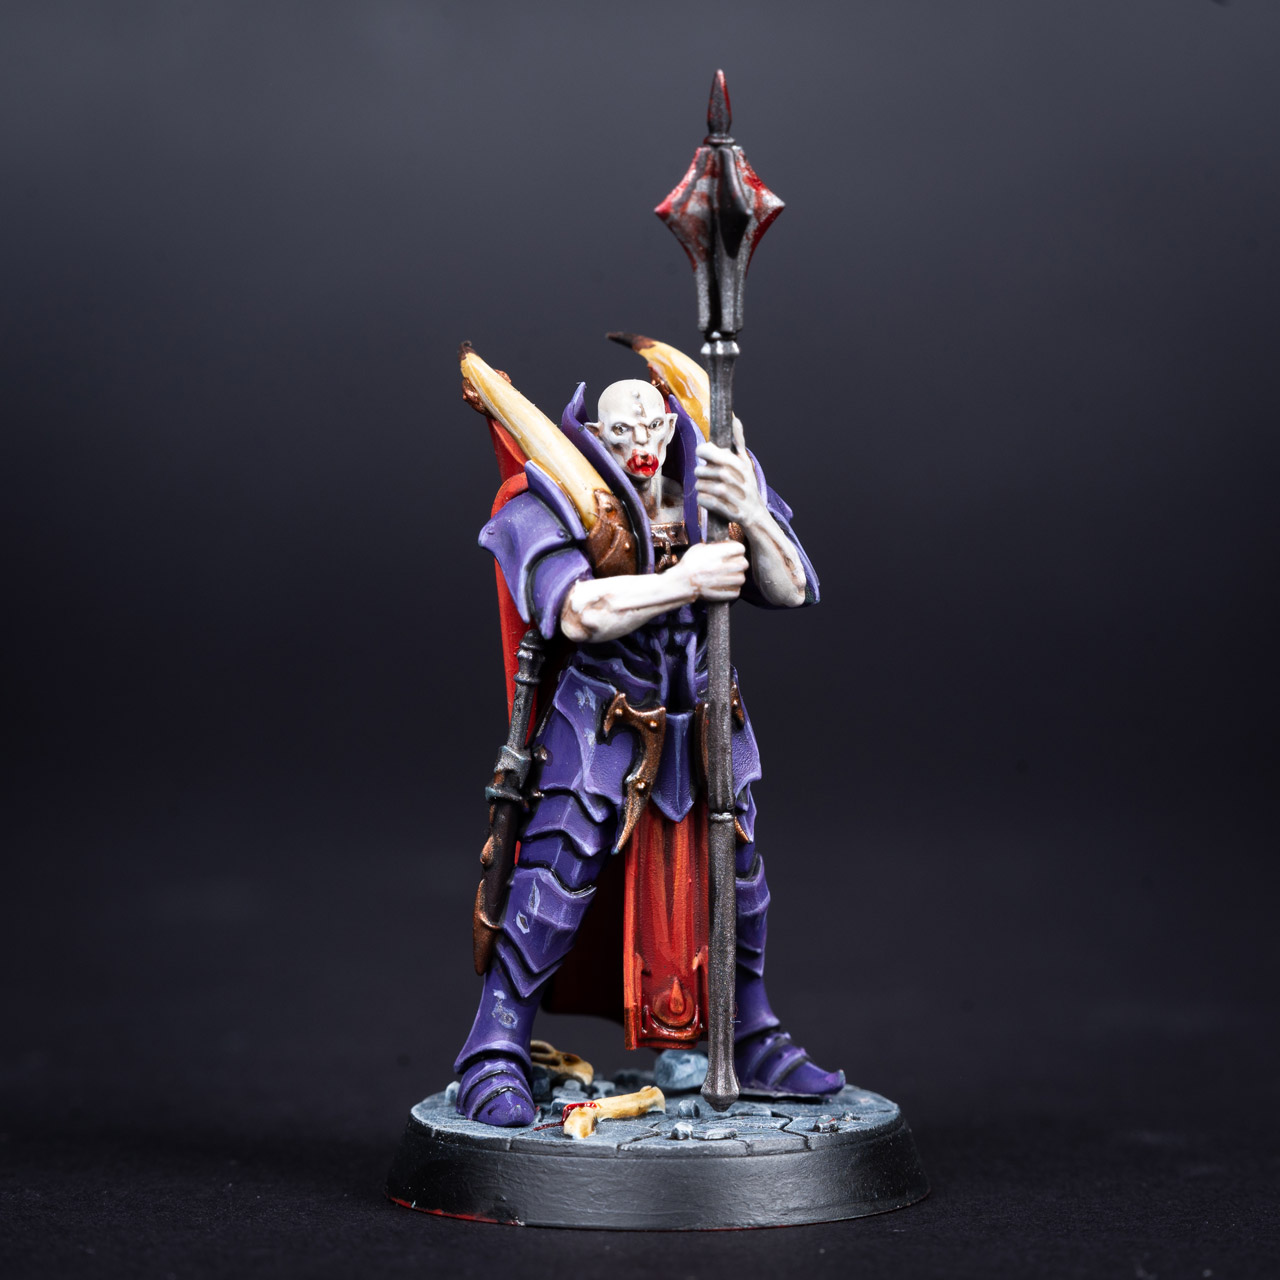 Gorath the Enforcer from the Crimson Court warband from Warhammer Underworlds: Direchasm